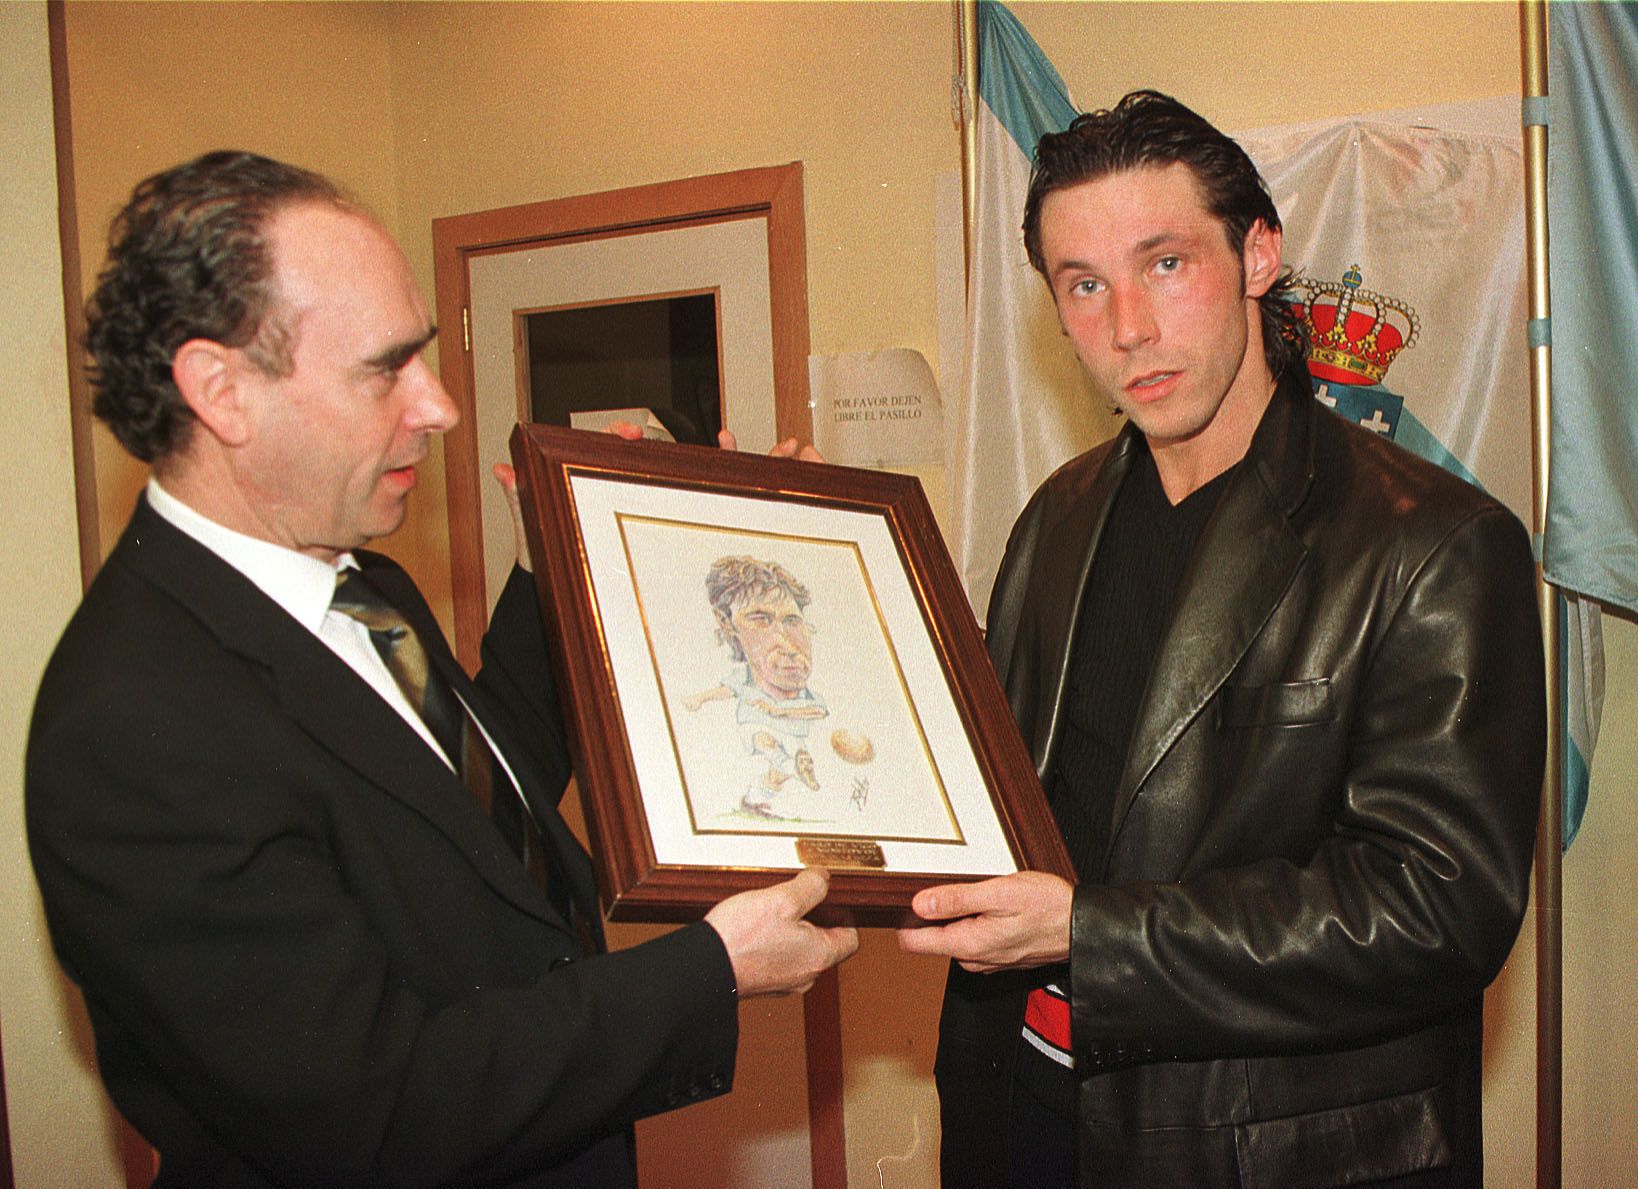 Ceferino entregando una caricatura al jugador del Celta Mostovoi Cameselle en 1999.jpg